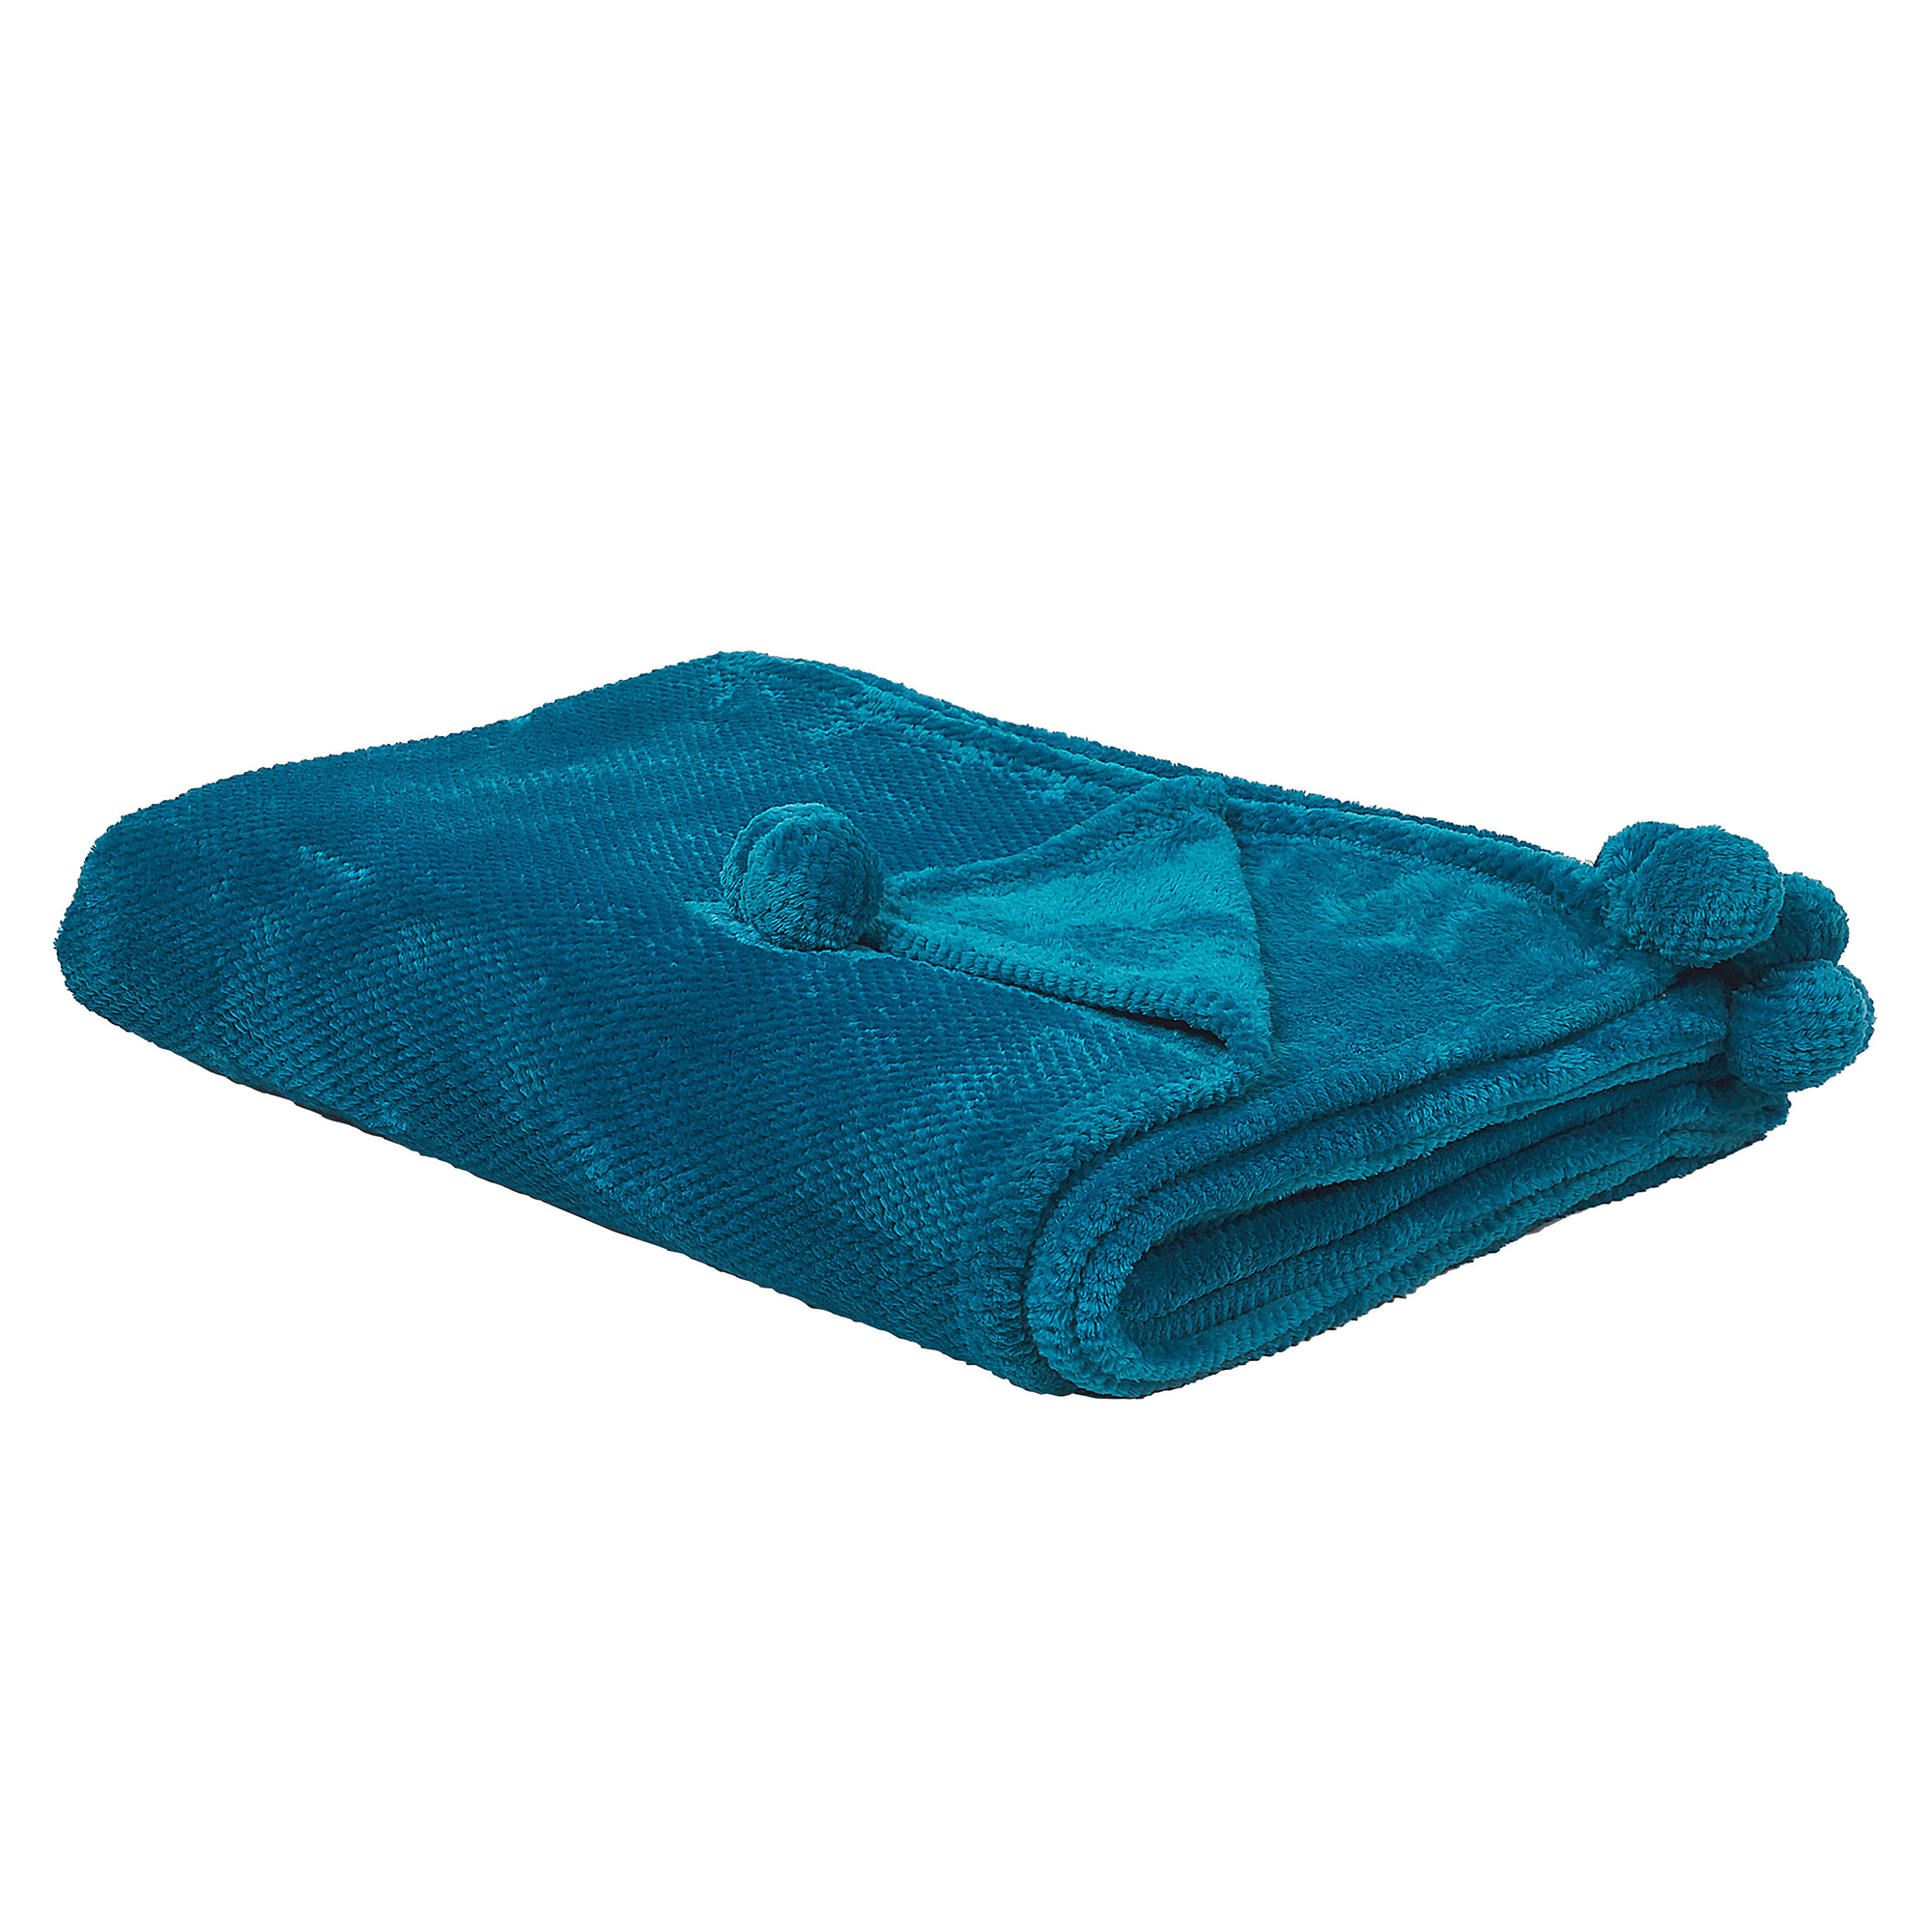 Beliani Blanket Blue Throw 150 x 200 with Pom Poms Soft Coverlet